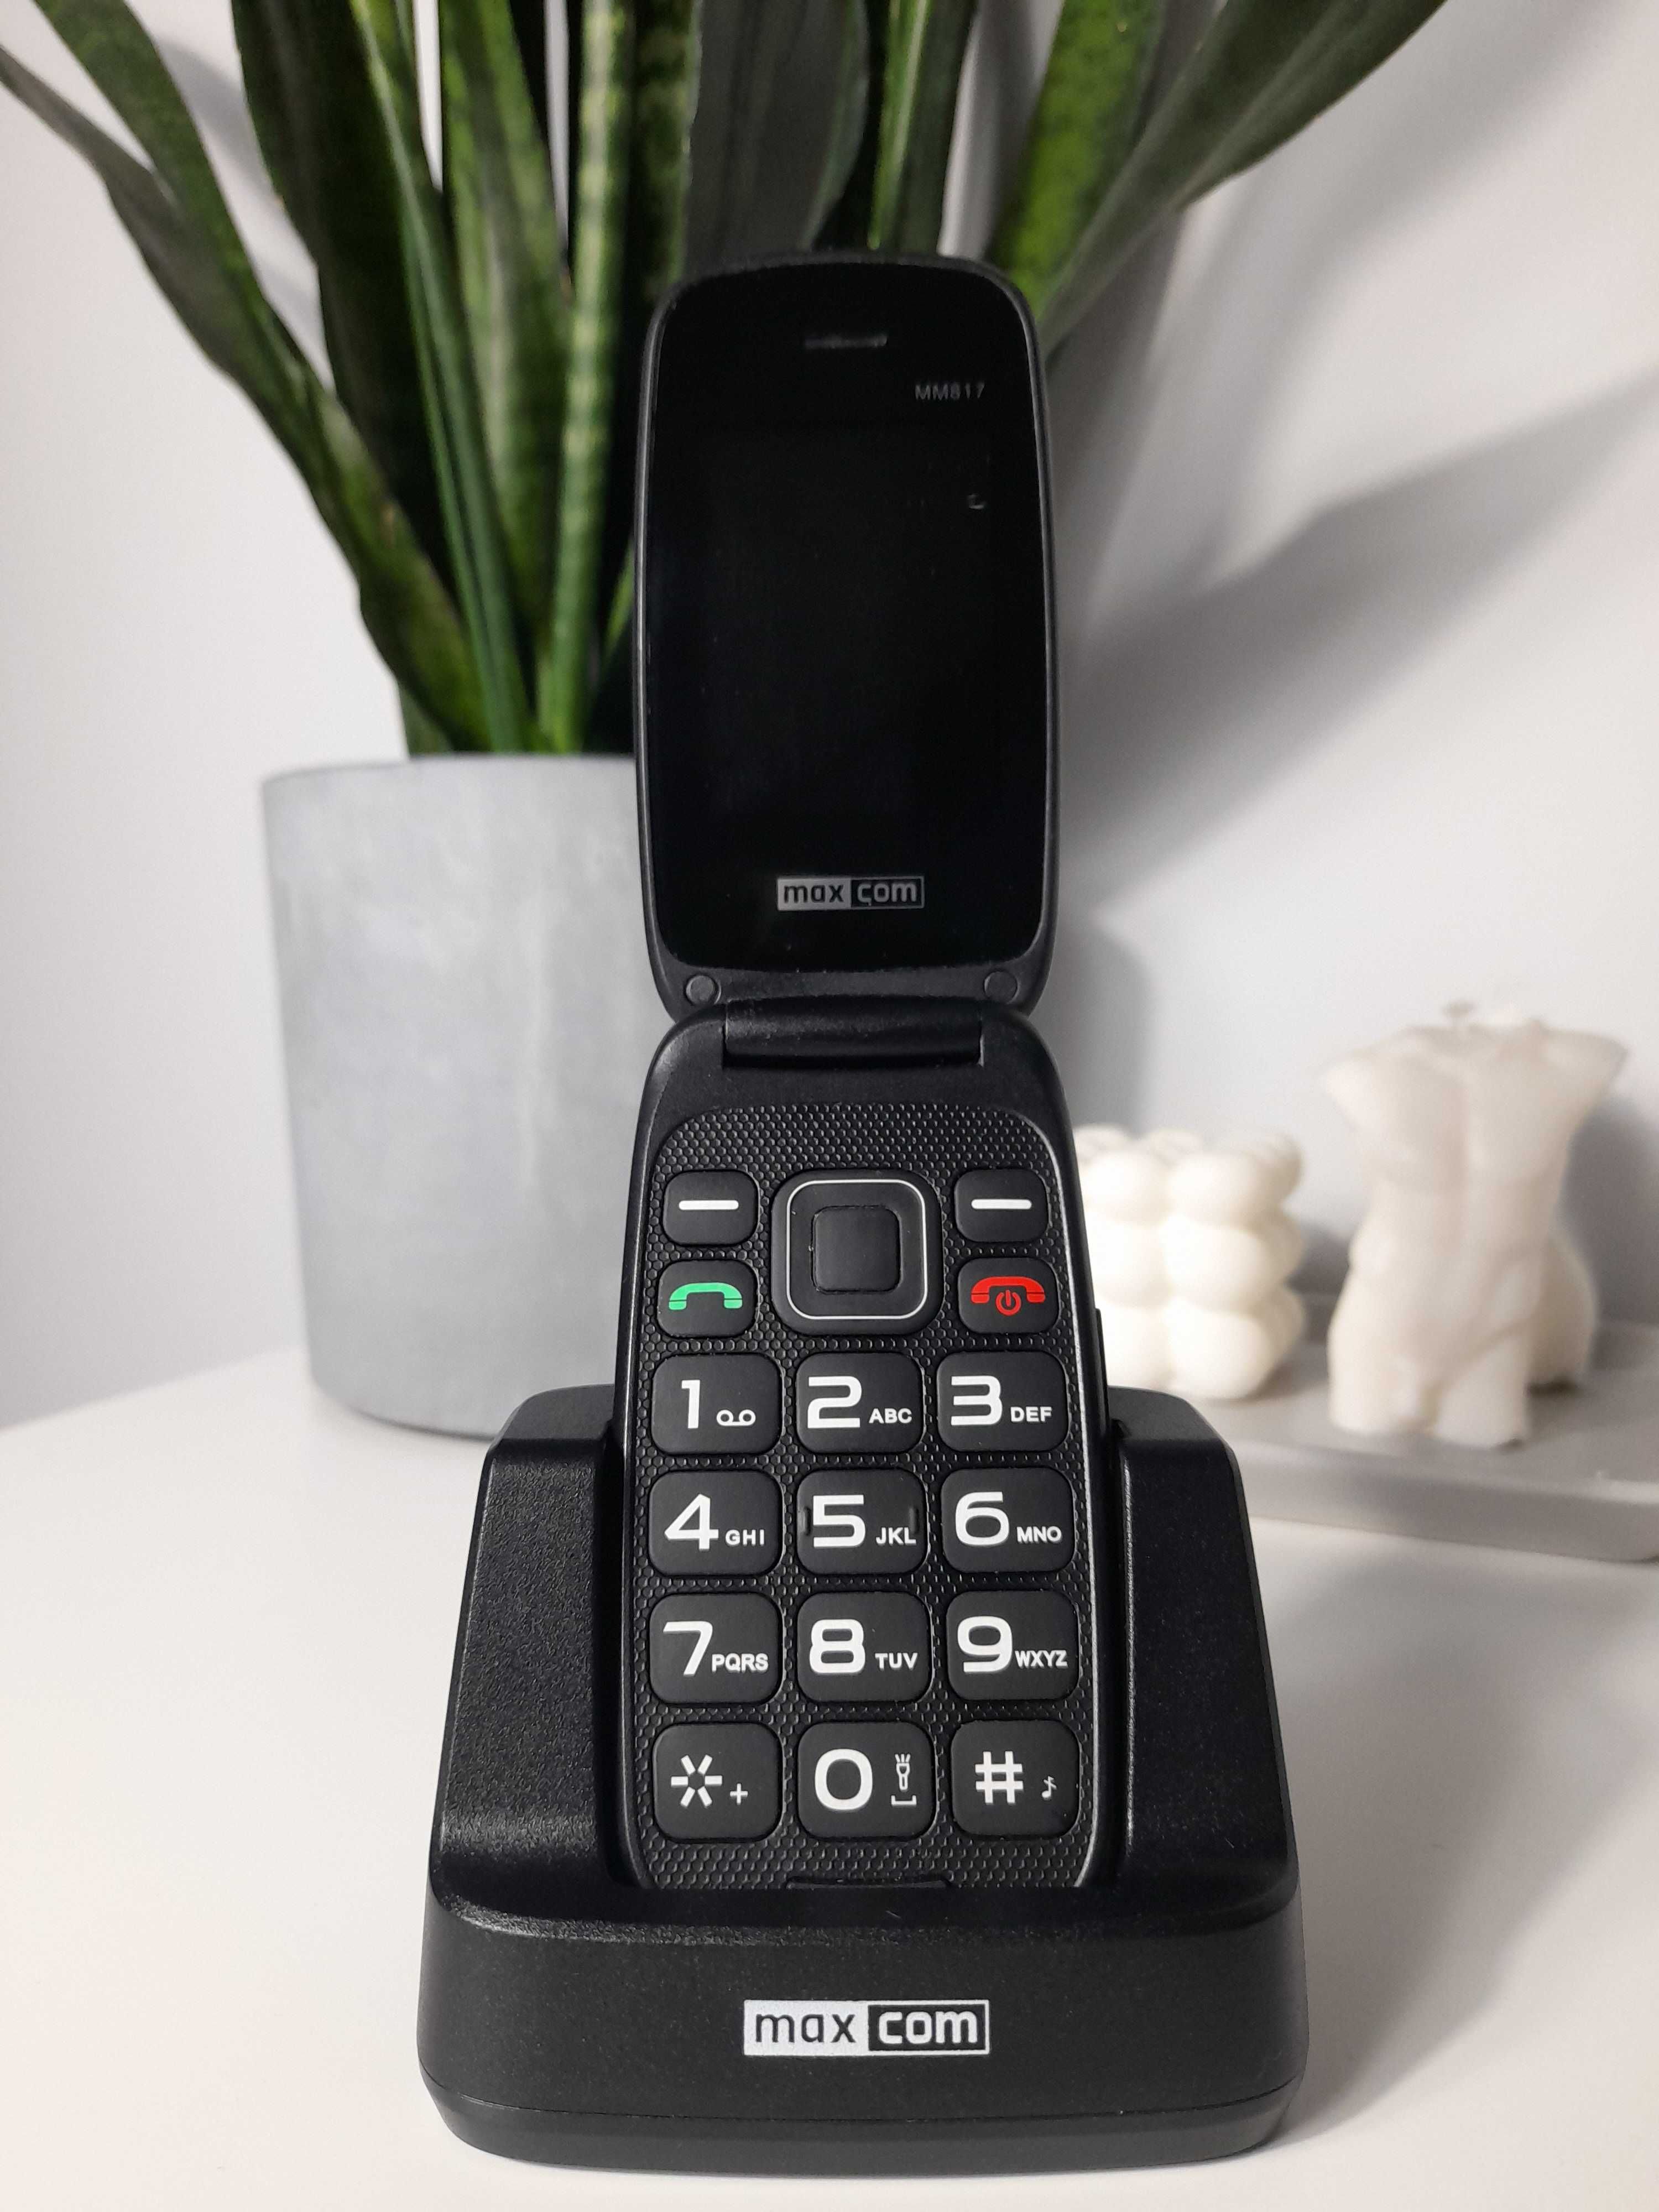 Telefon Maxcom comfort MM817 z klapką dla seniora wysyłka